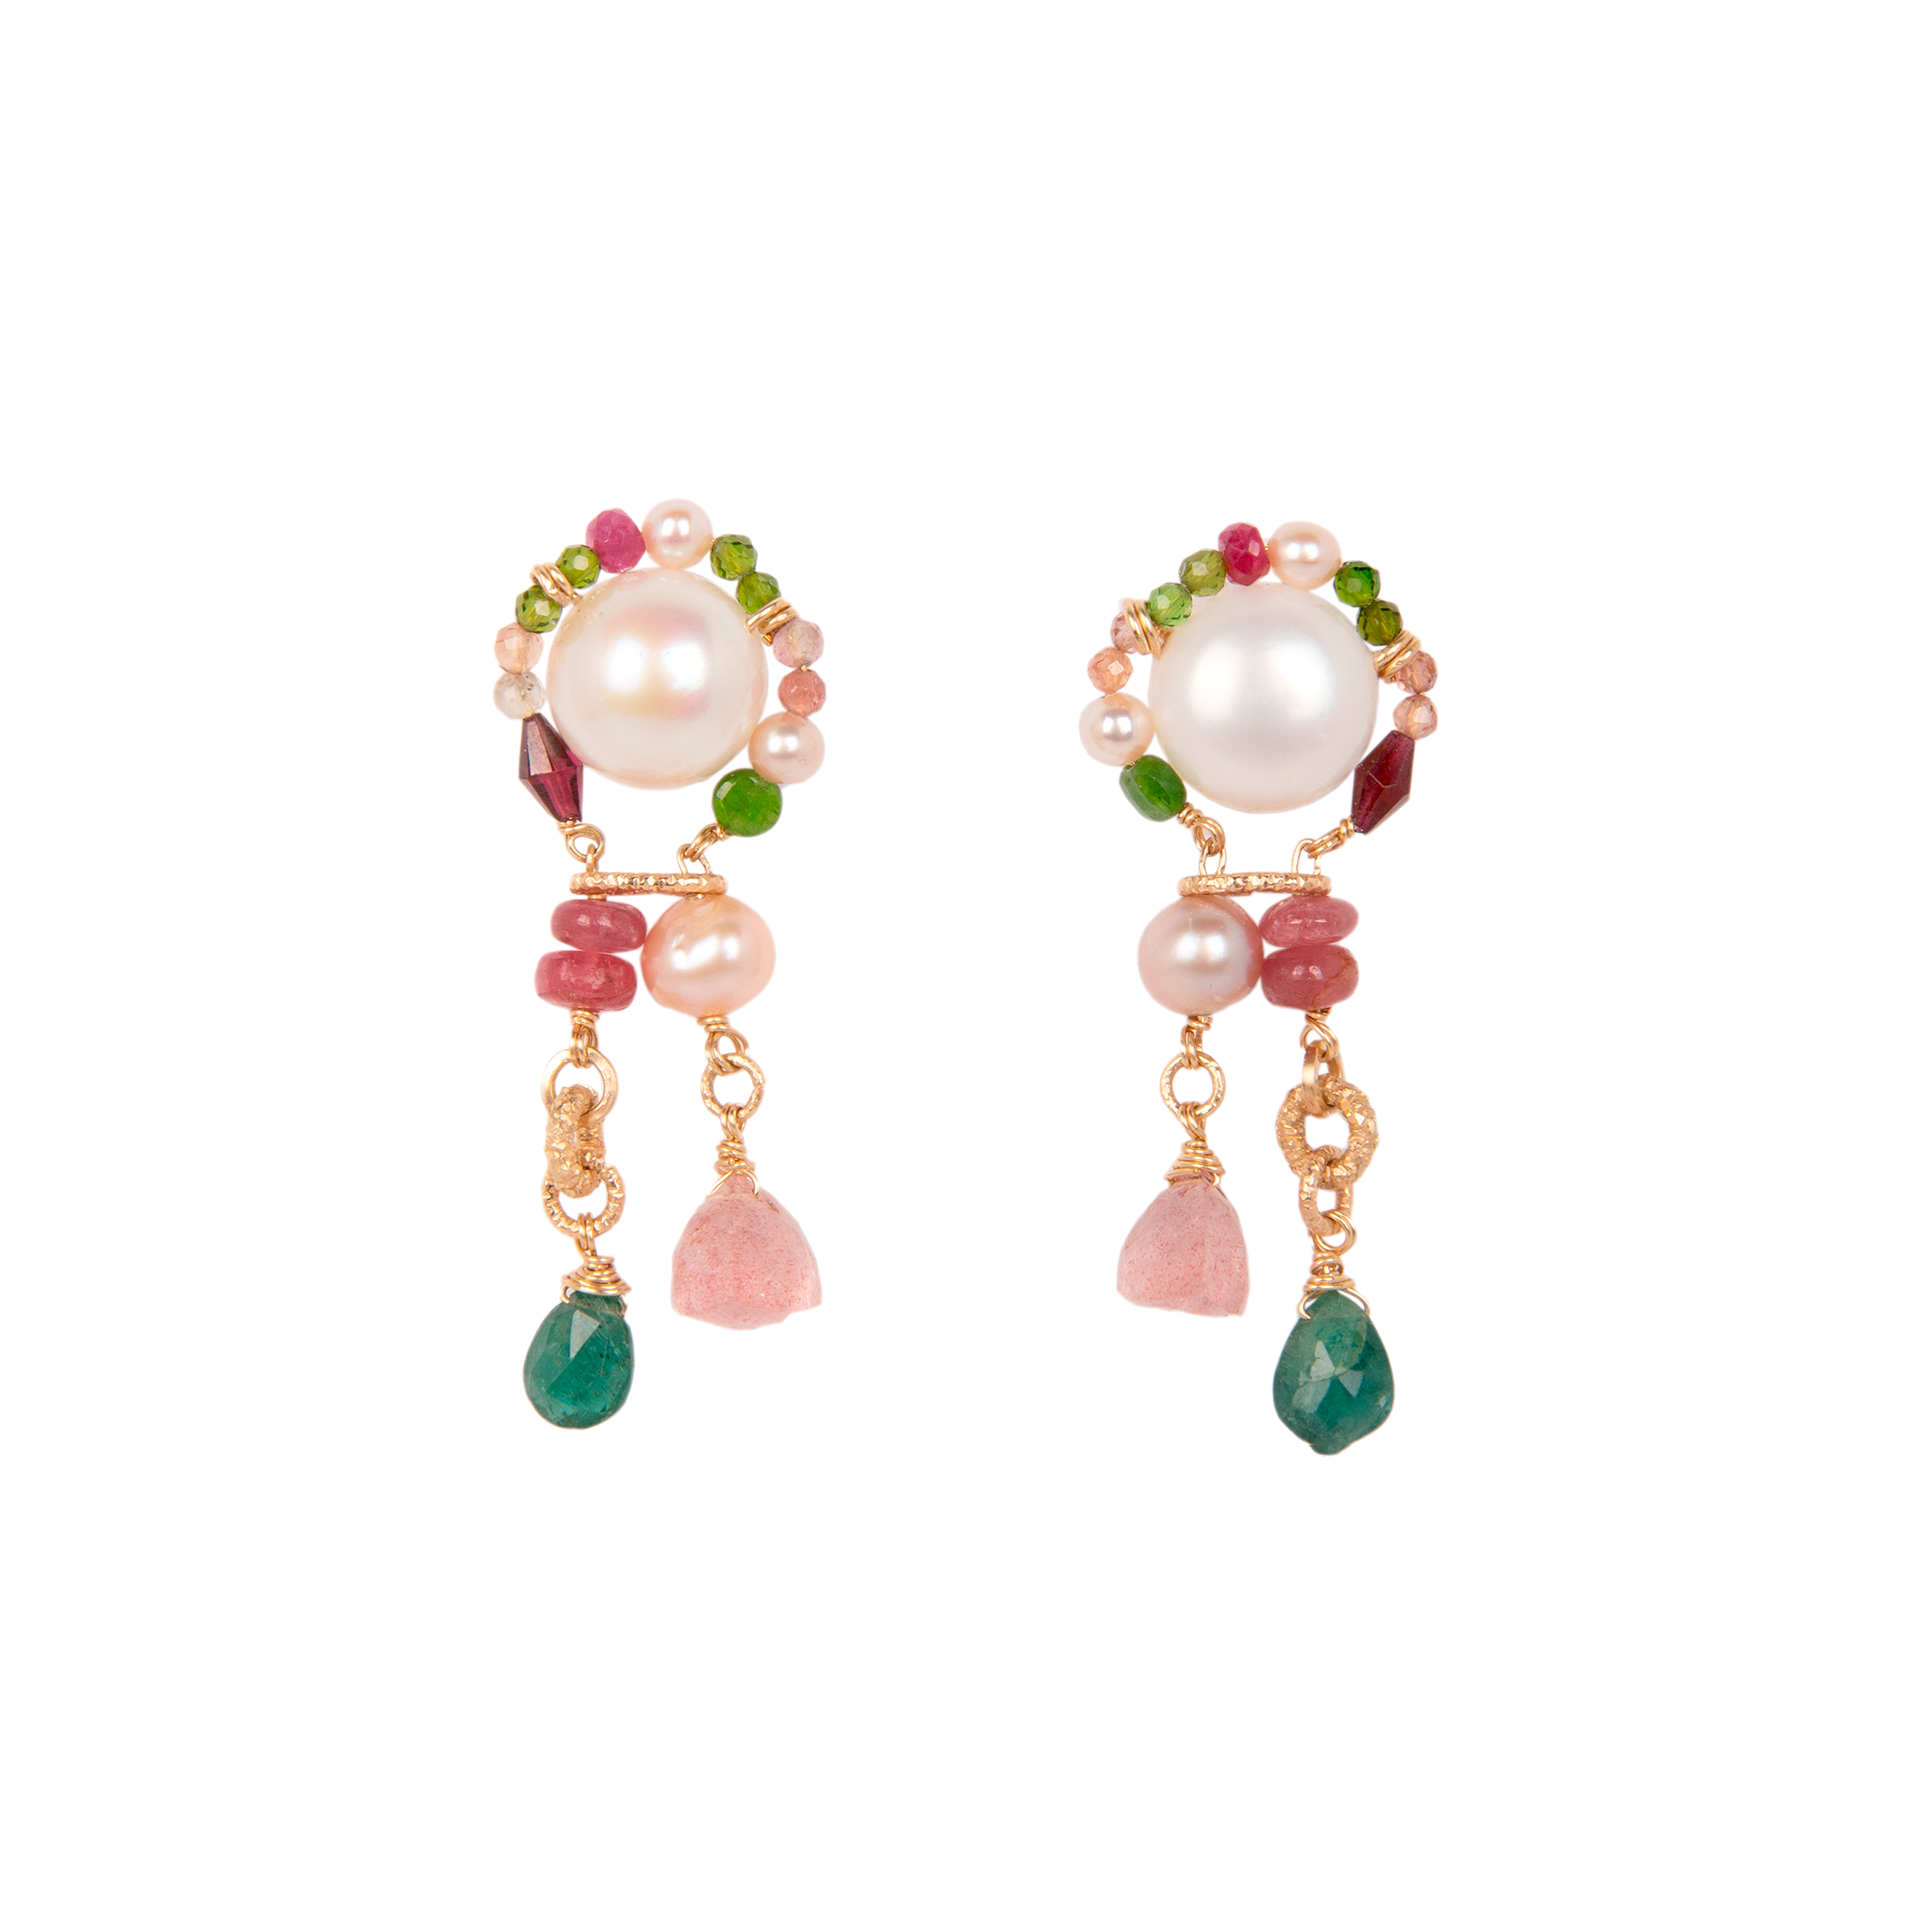 Buganvilla Earrings (50mm) - Perla Blanca, Ruby, Granate, Tsavorite, perla salmon, cuarzo cherry, turmalina rosa Earrings TARBAY   